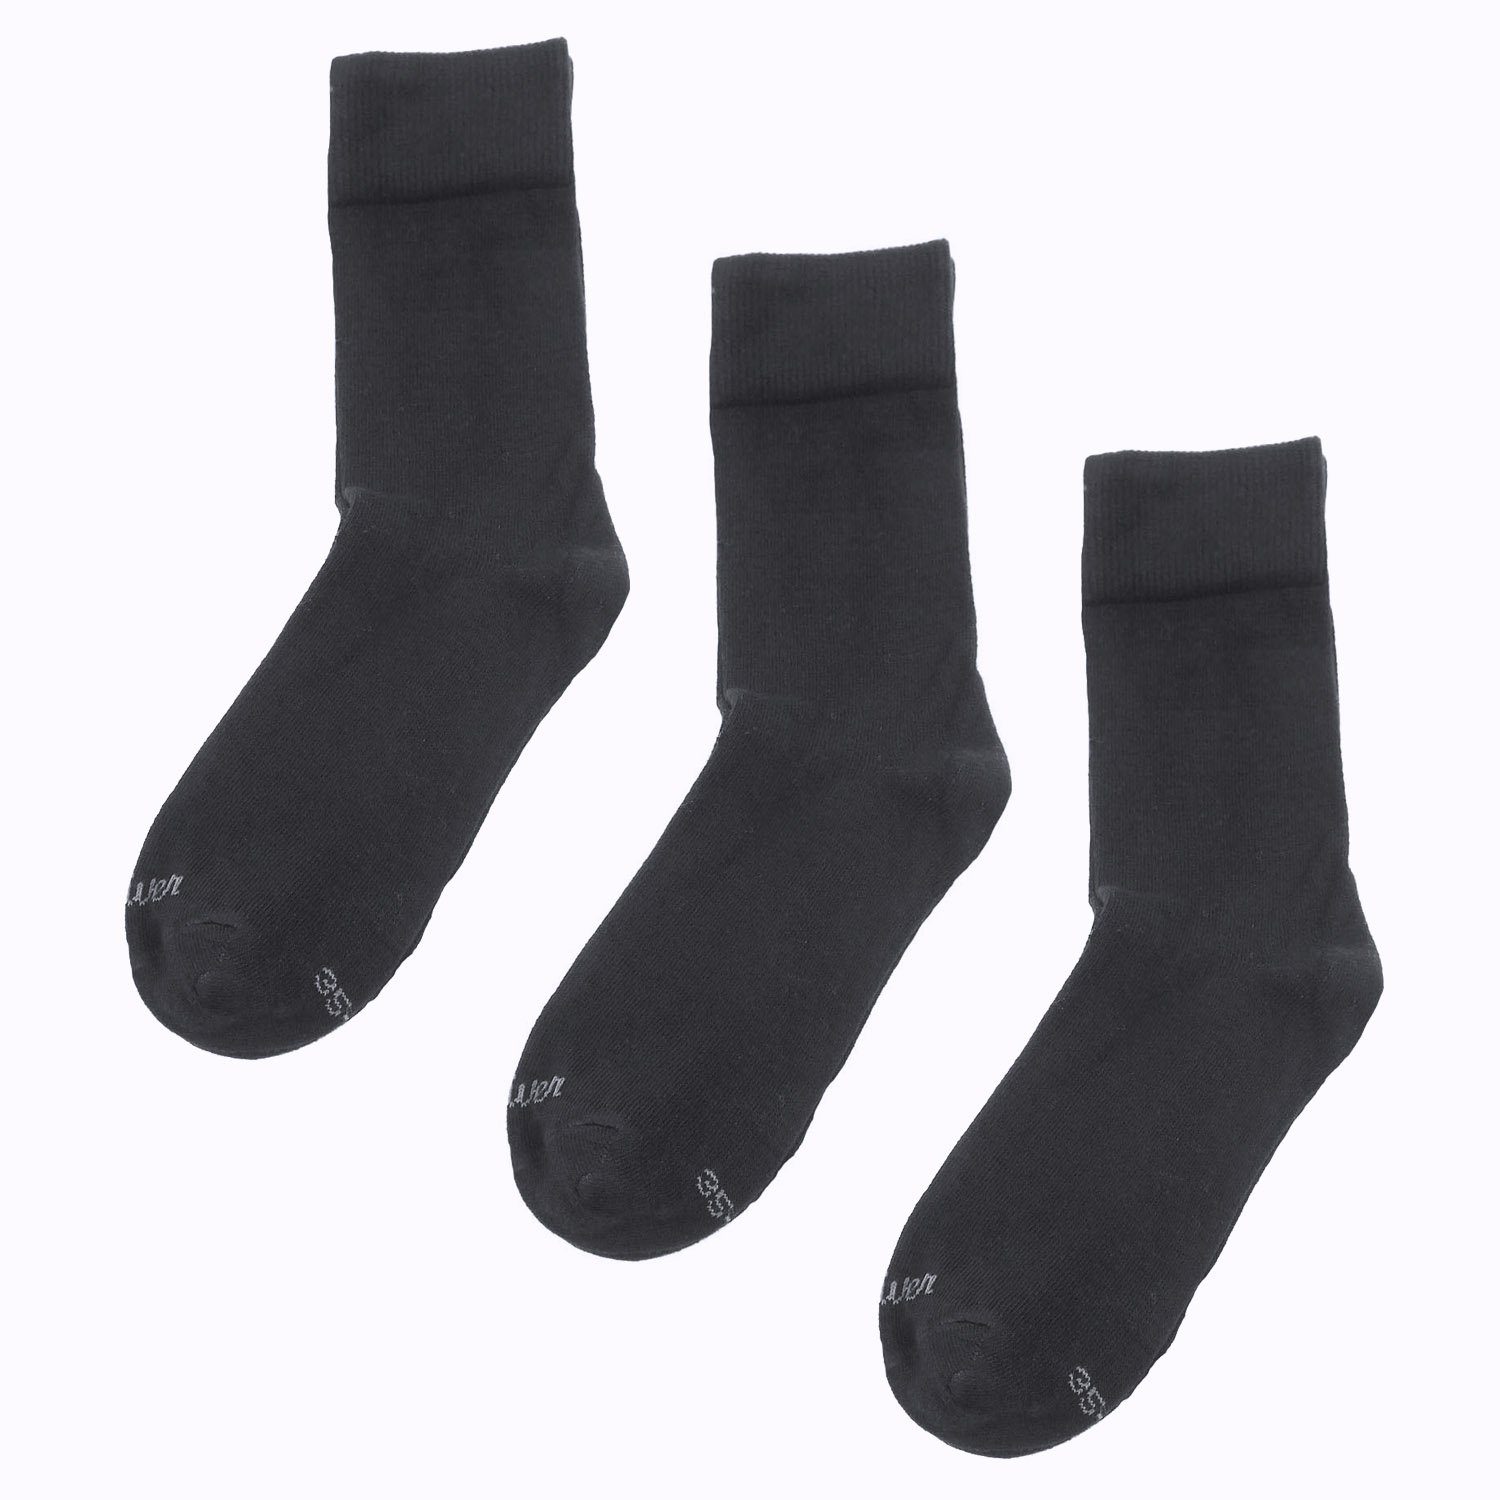 s.Oliver Langsocken S20022 (Packung, 3-Paar, 3 Paar) Herren & Damen Socken robuste Unisex-Socken 05 black